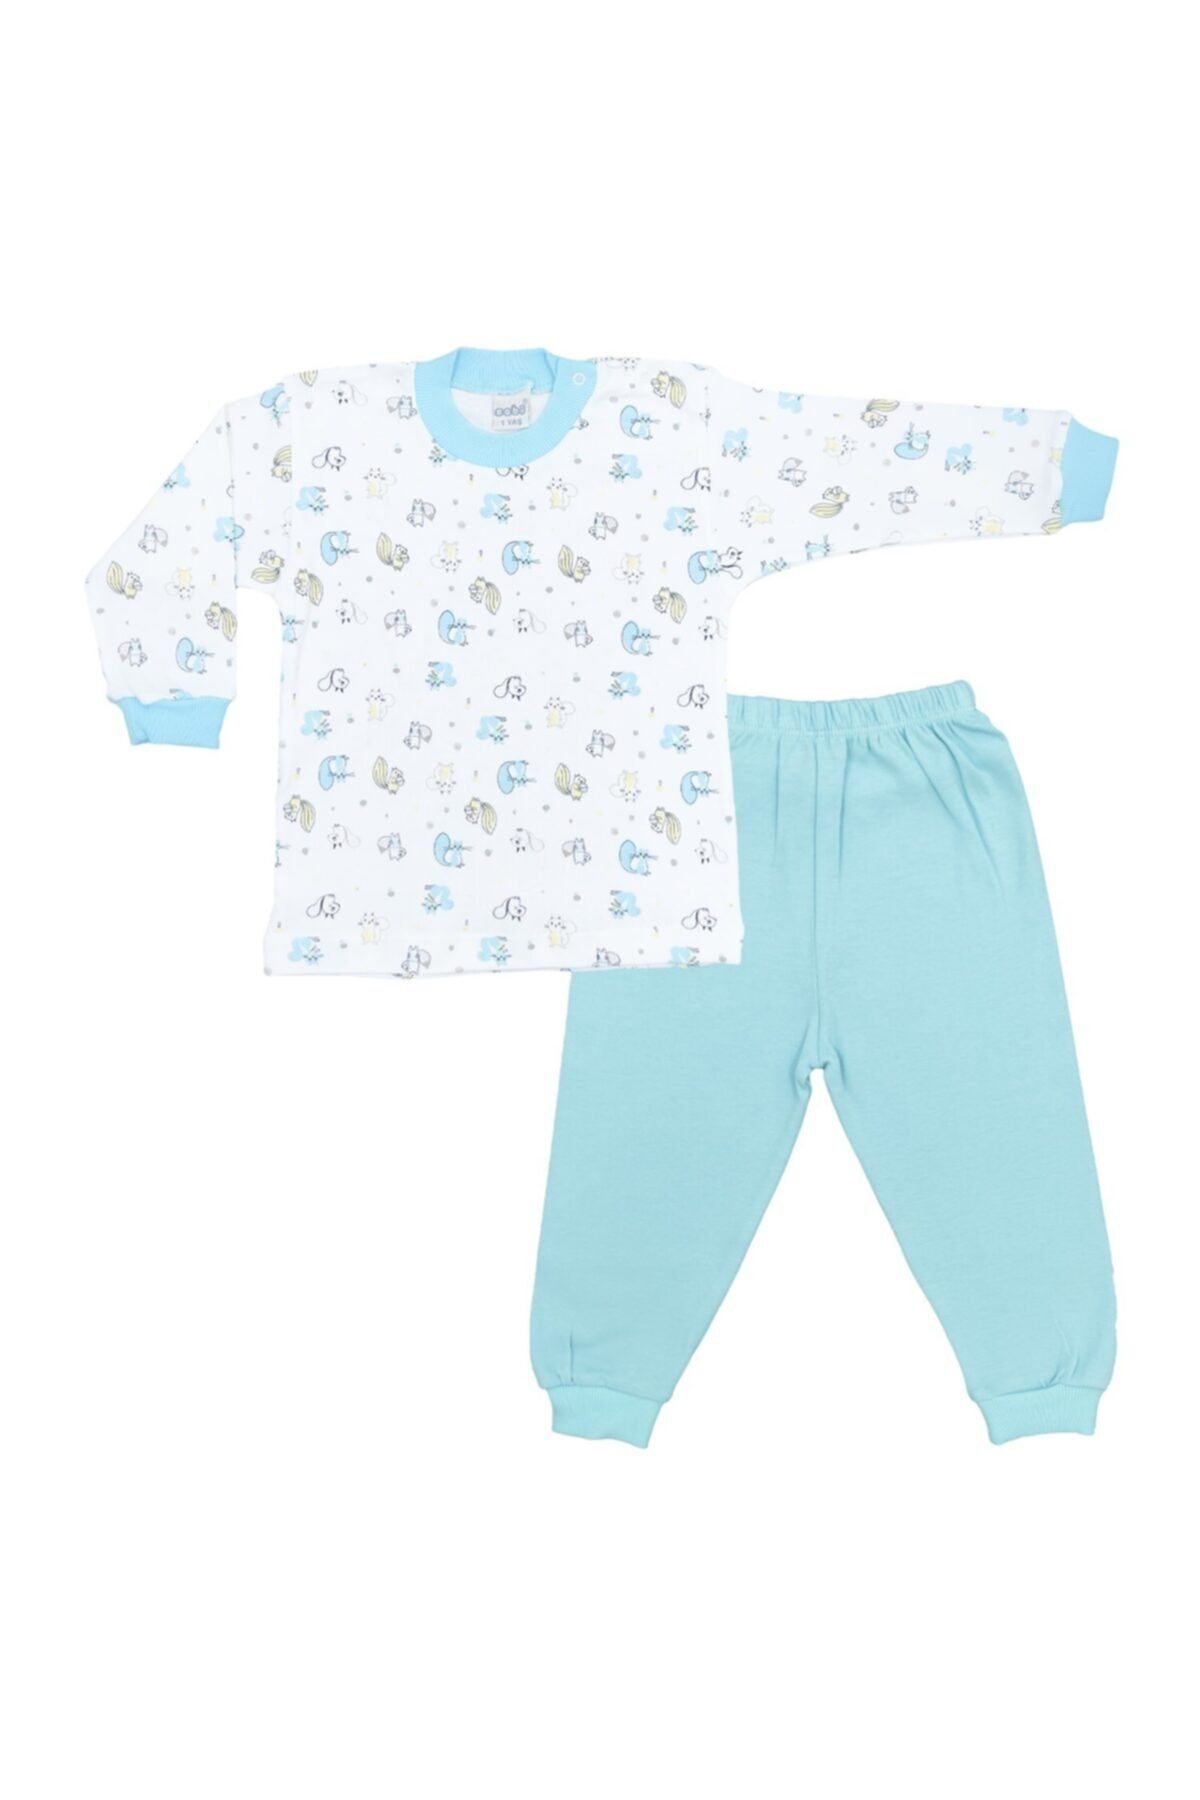 Sincap Baskılı Bebek Pijama Takımı 2416_0